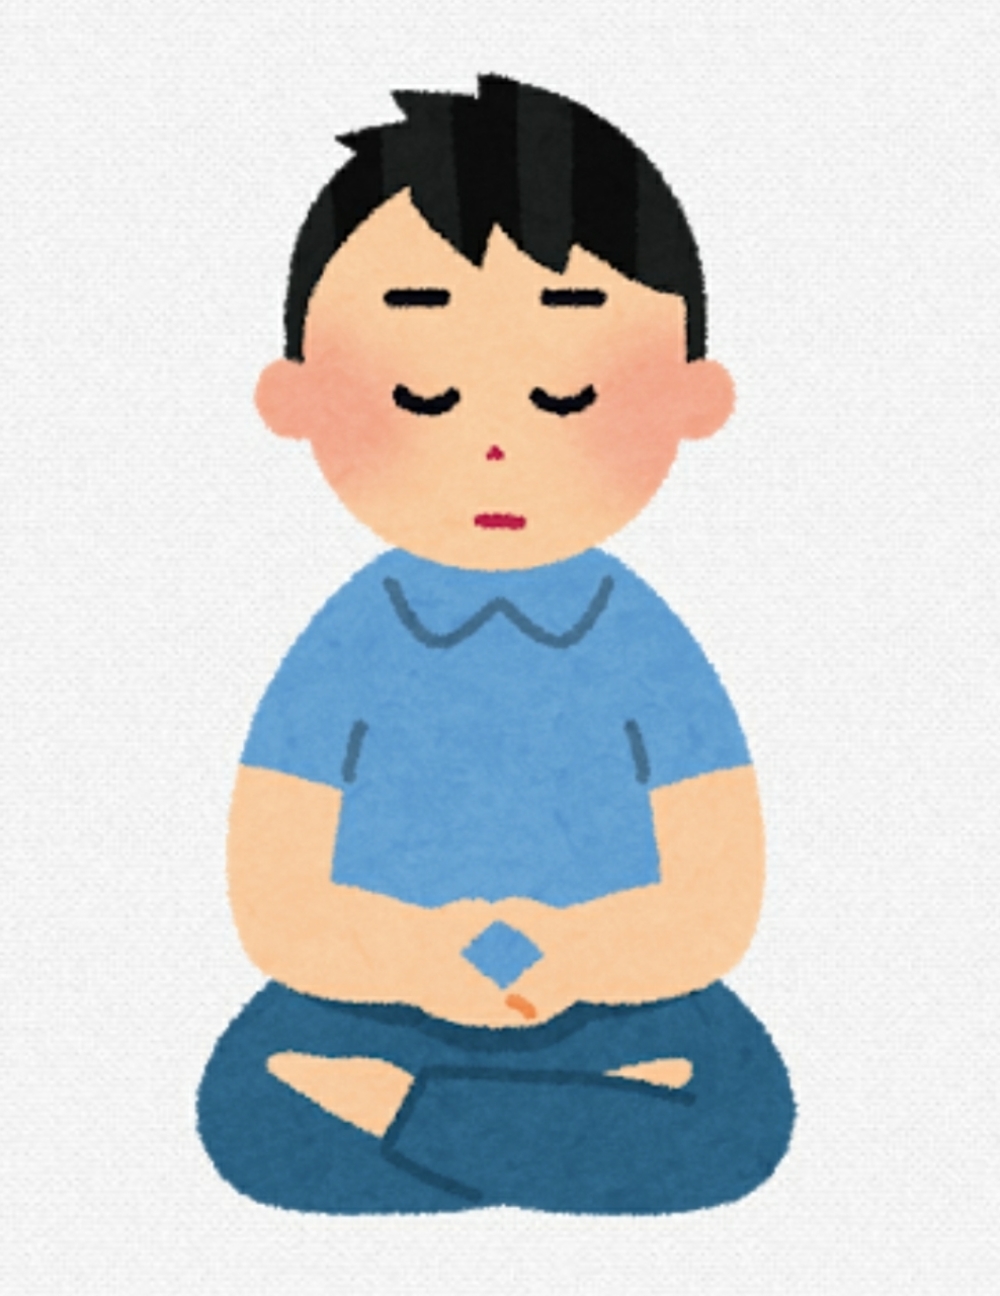 🍀🧘🏻座禅で瞑想体験🧘🏻‍♀️🍀(お茶とお菓子付)